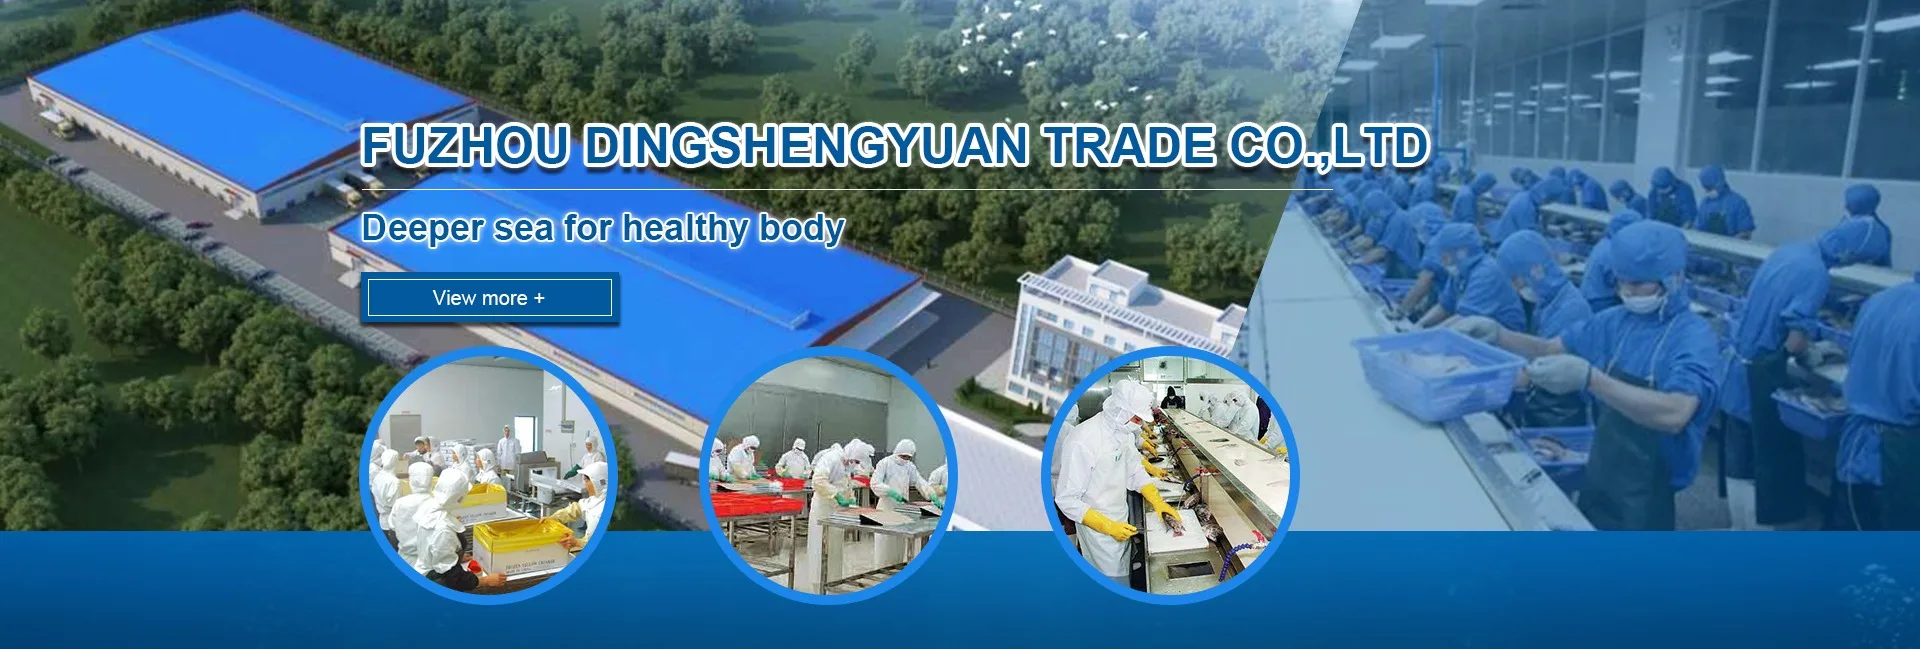 Fuzhou Dingshengyuan Trade Co Ltd Frozen Squid Tube Frozen Tilapia